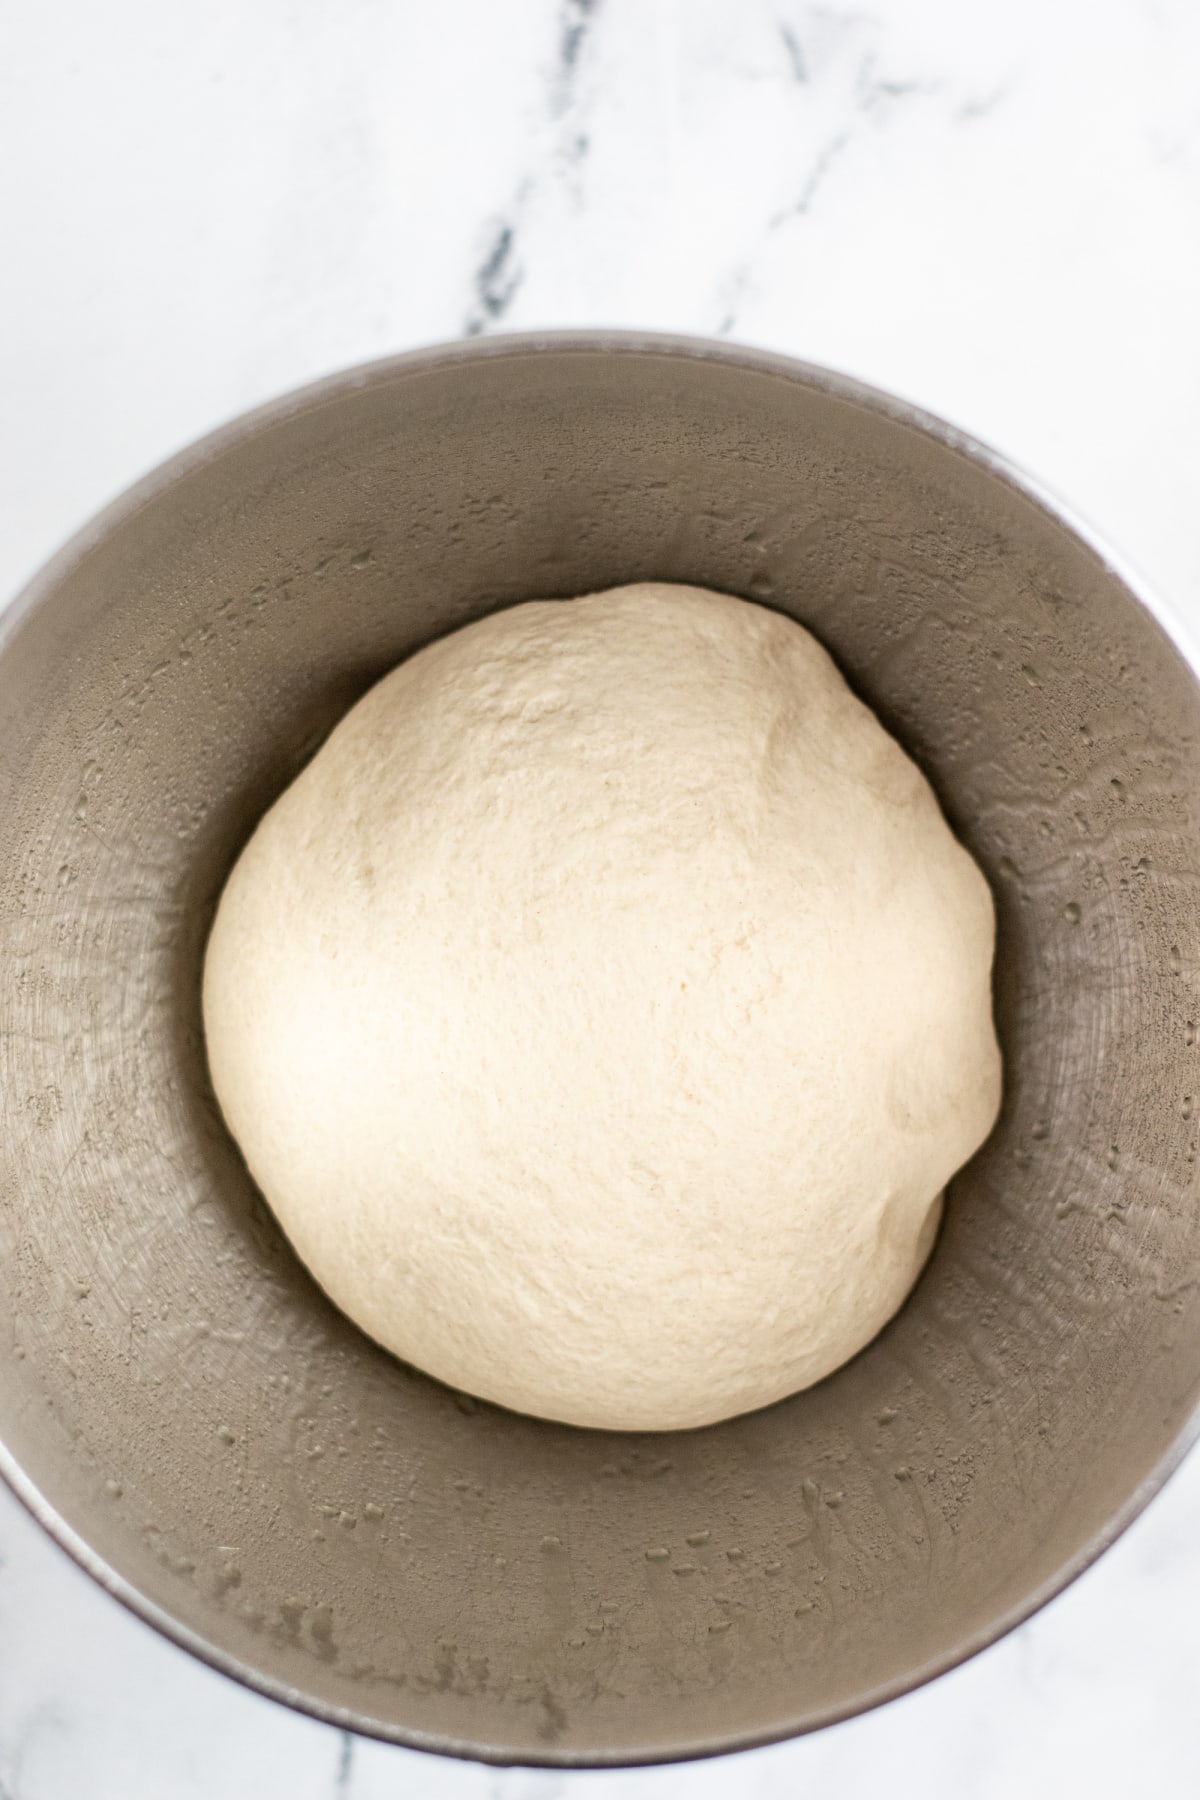 Pretzel dough in bowl